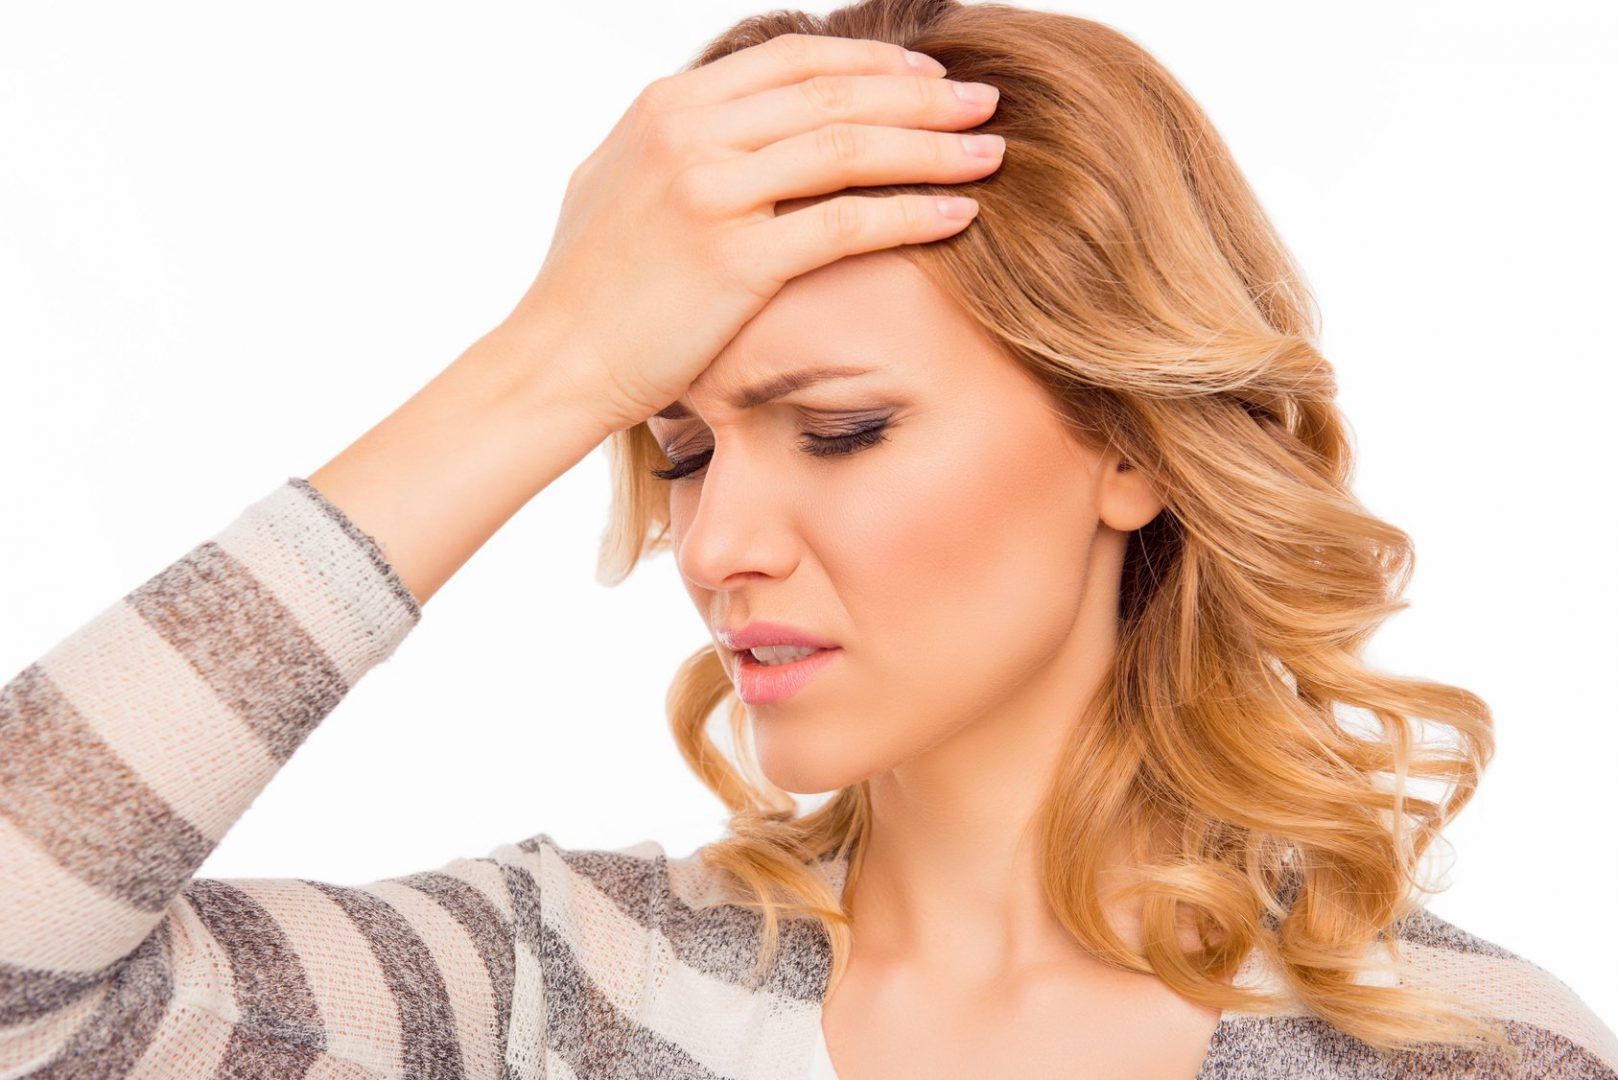 4 remeis naturals per quan tinguis mal de cap